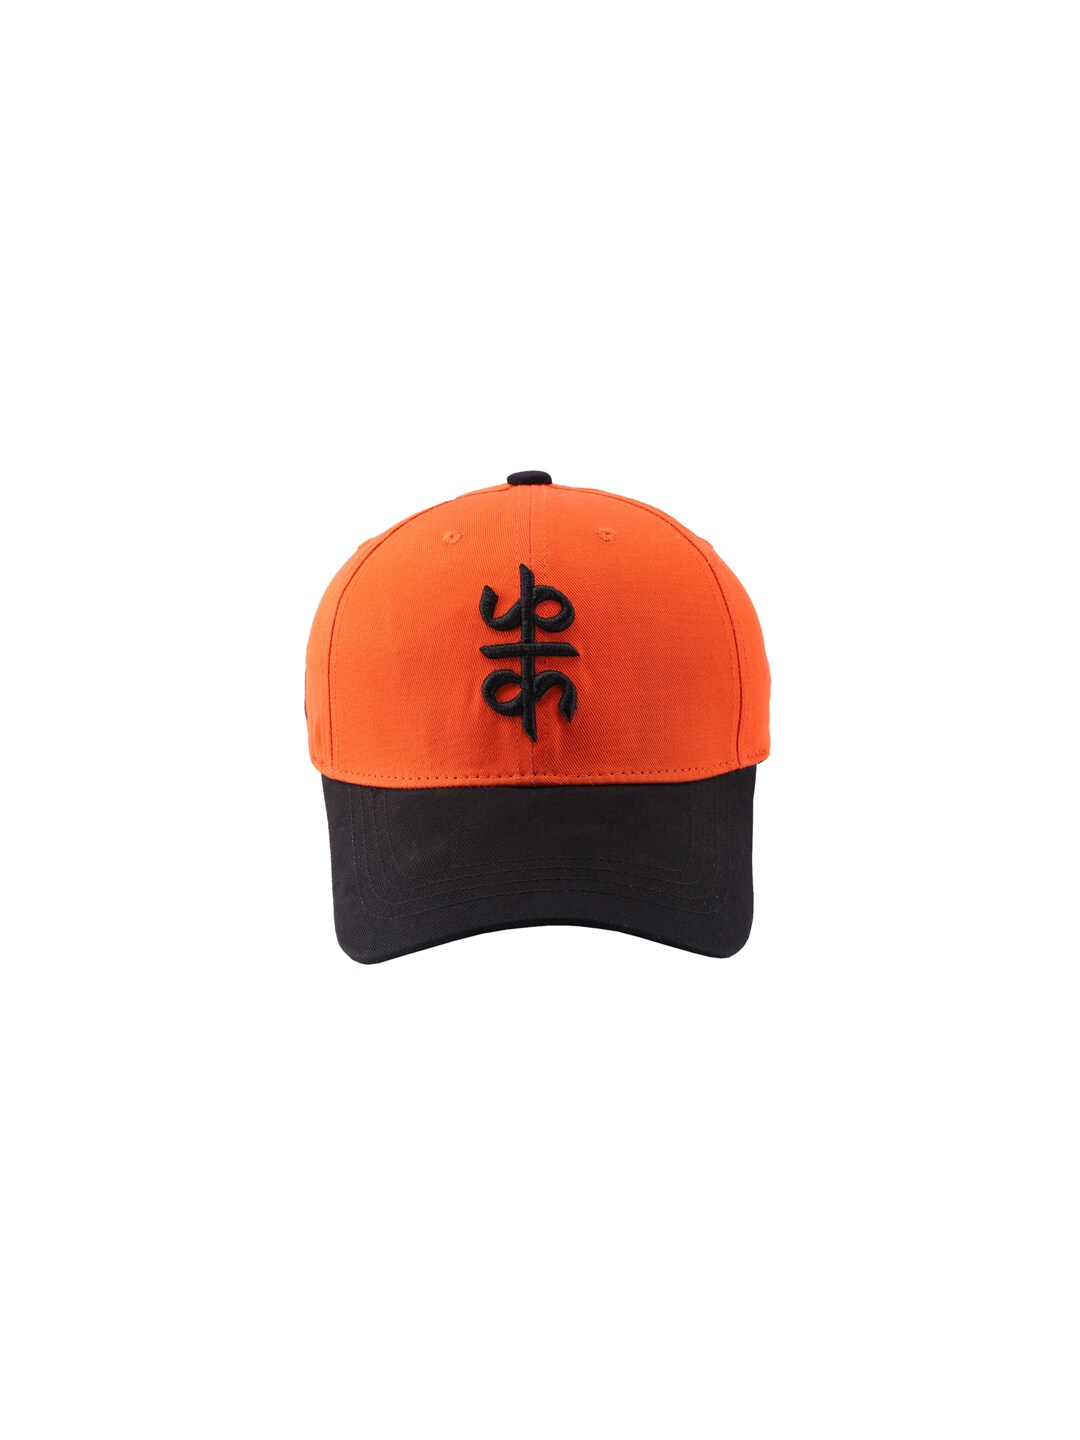 Cap Shap Unisex Orange & Black Embroidered Baseball Cap Price in India